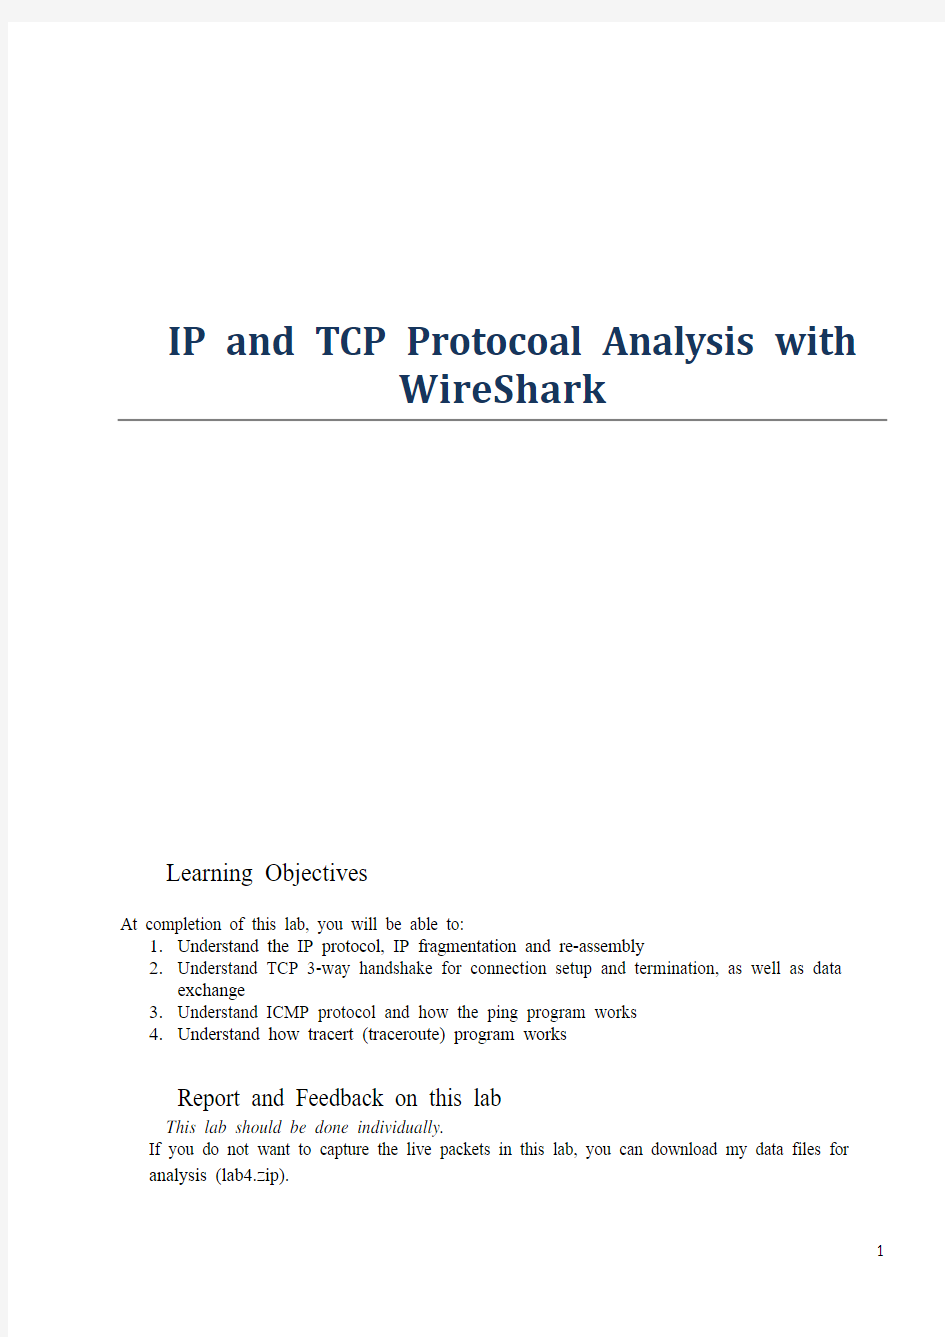 计网实验IP and TCP Protocoal Analysis with WireShark